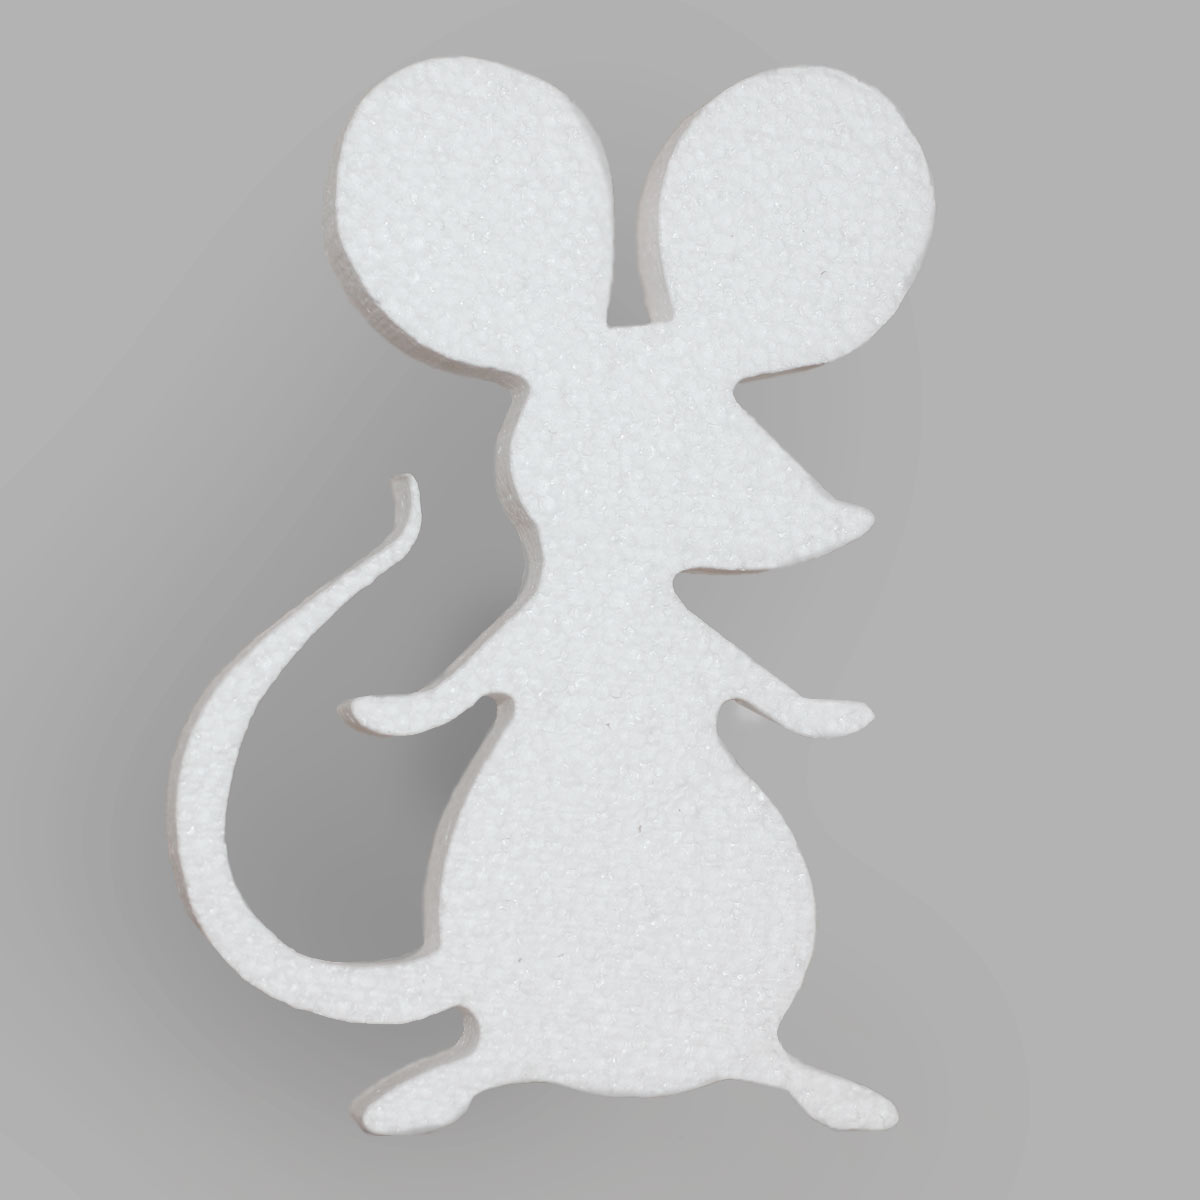 мышь из пенопласта - символ года.